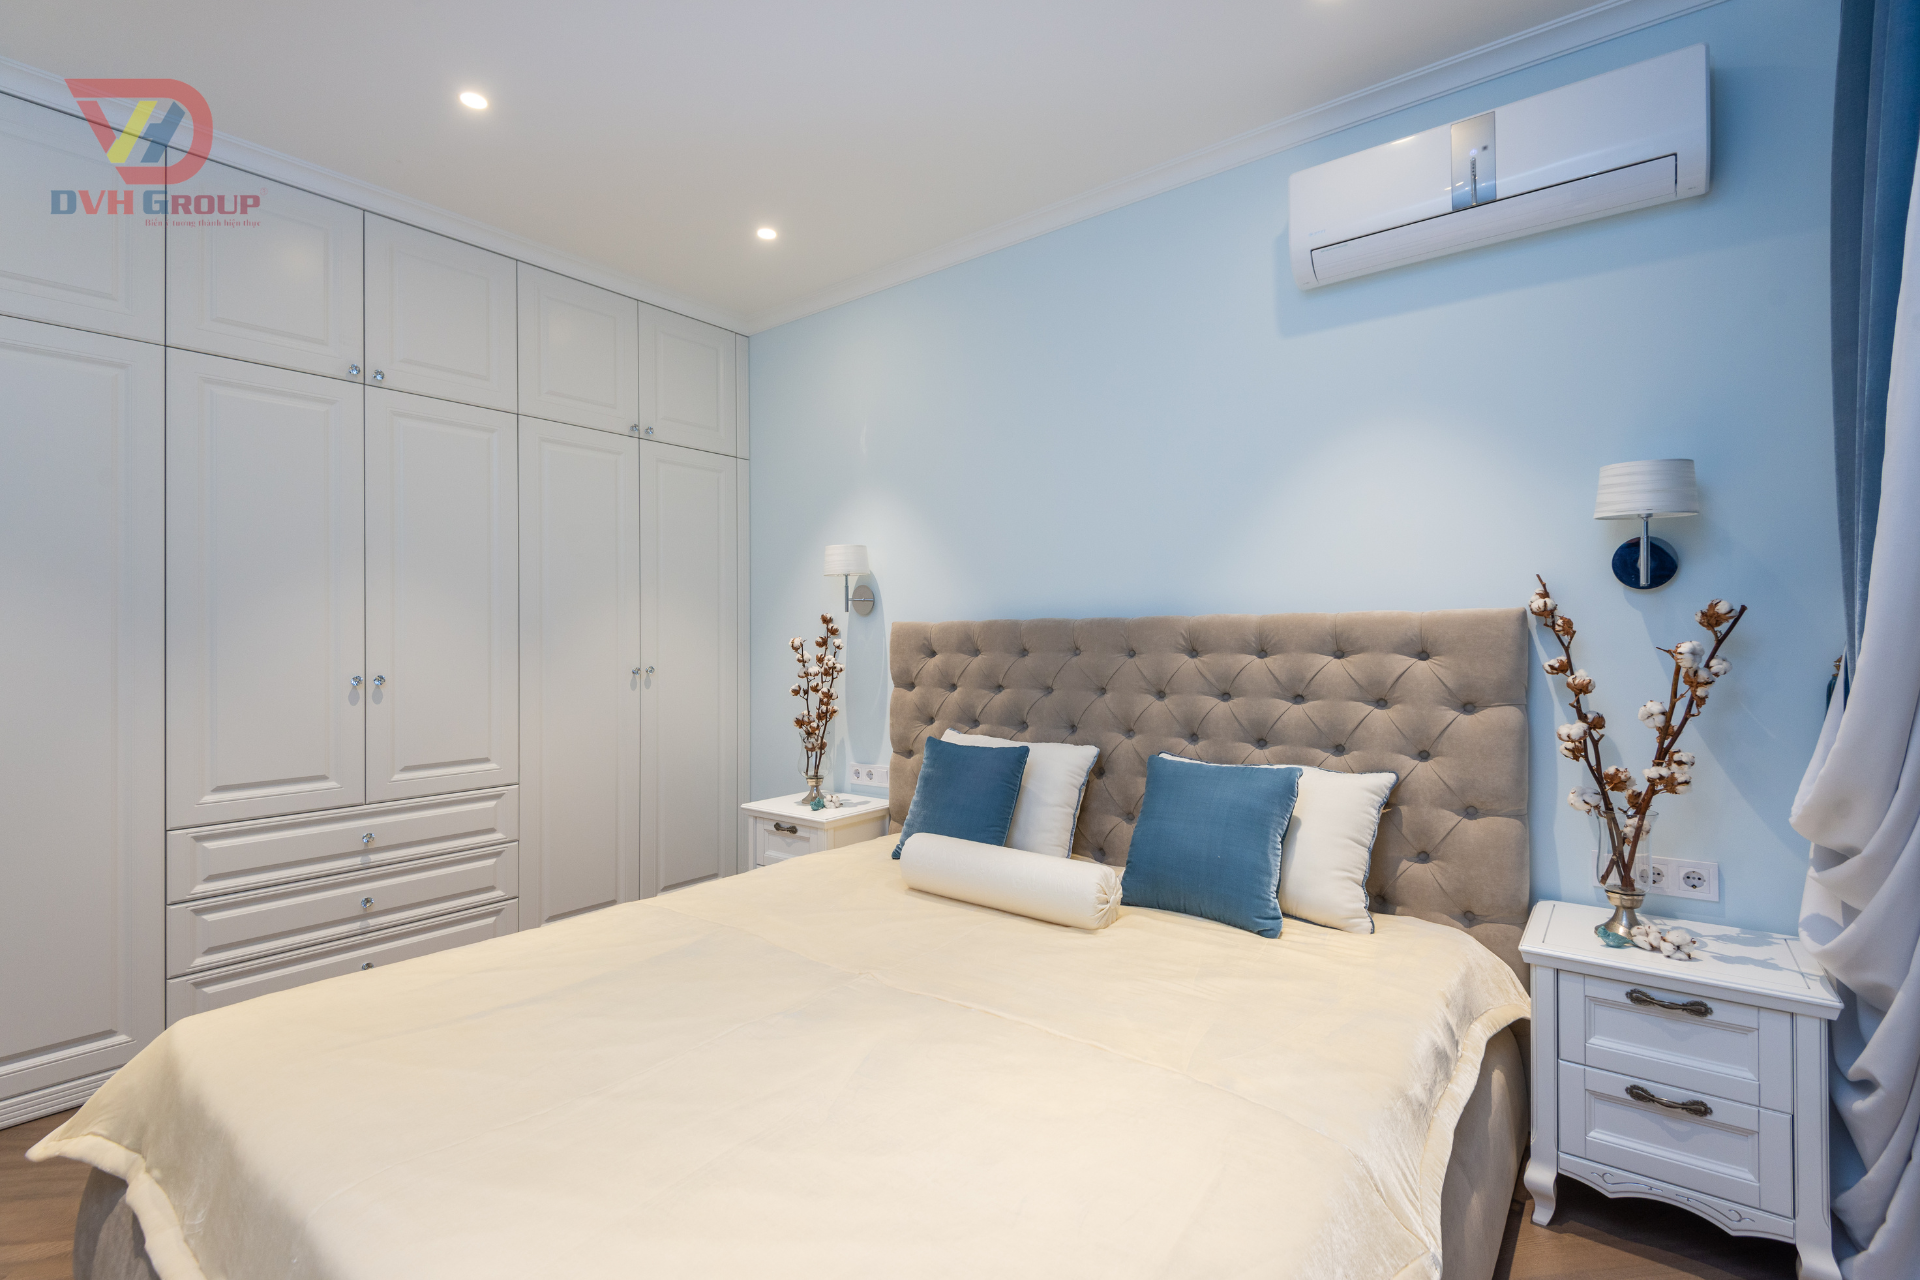 Mẫu phòng ngủ với thiết kế đơn giản hiện đại sang trọng